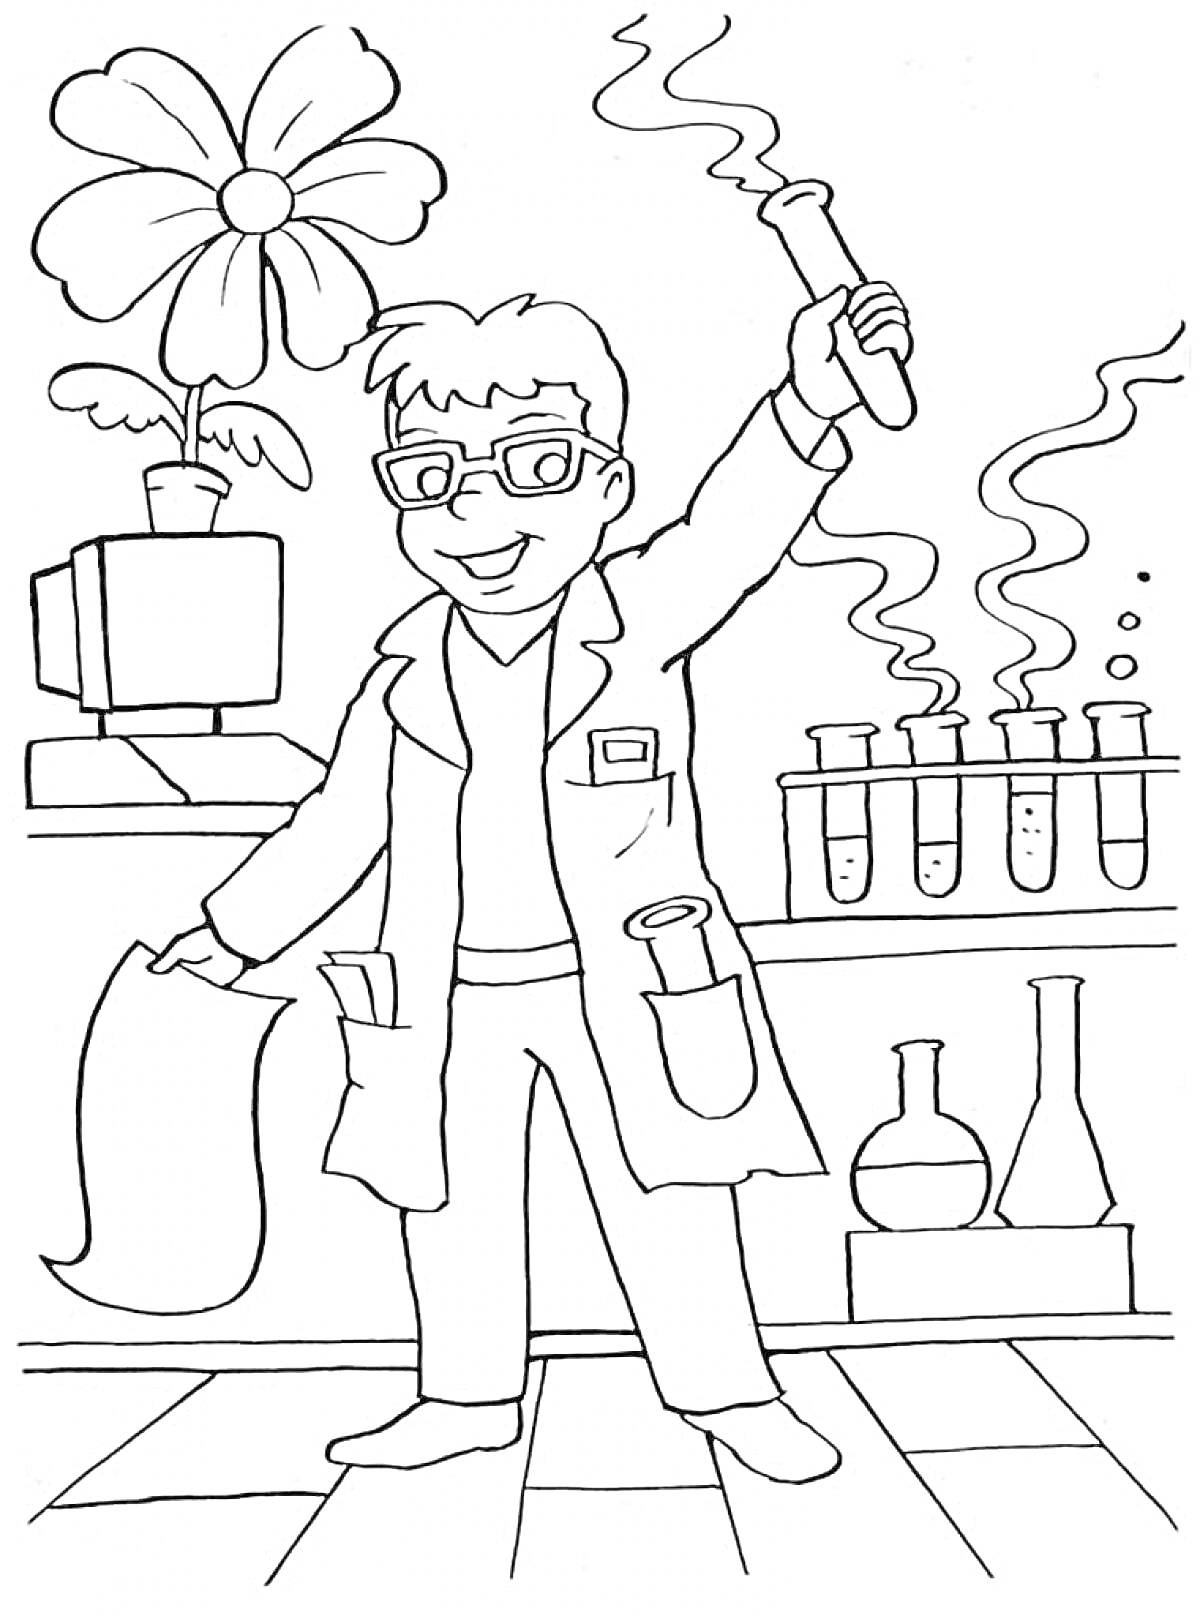 Ученый в лаборатории с пробирками, колбами, цветком на компьютере и листом бумаги